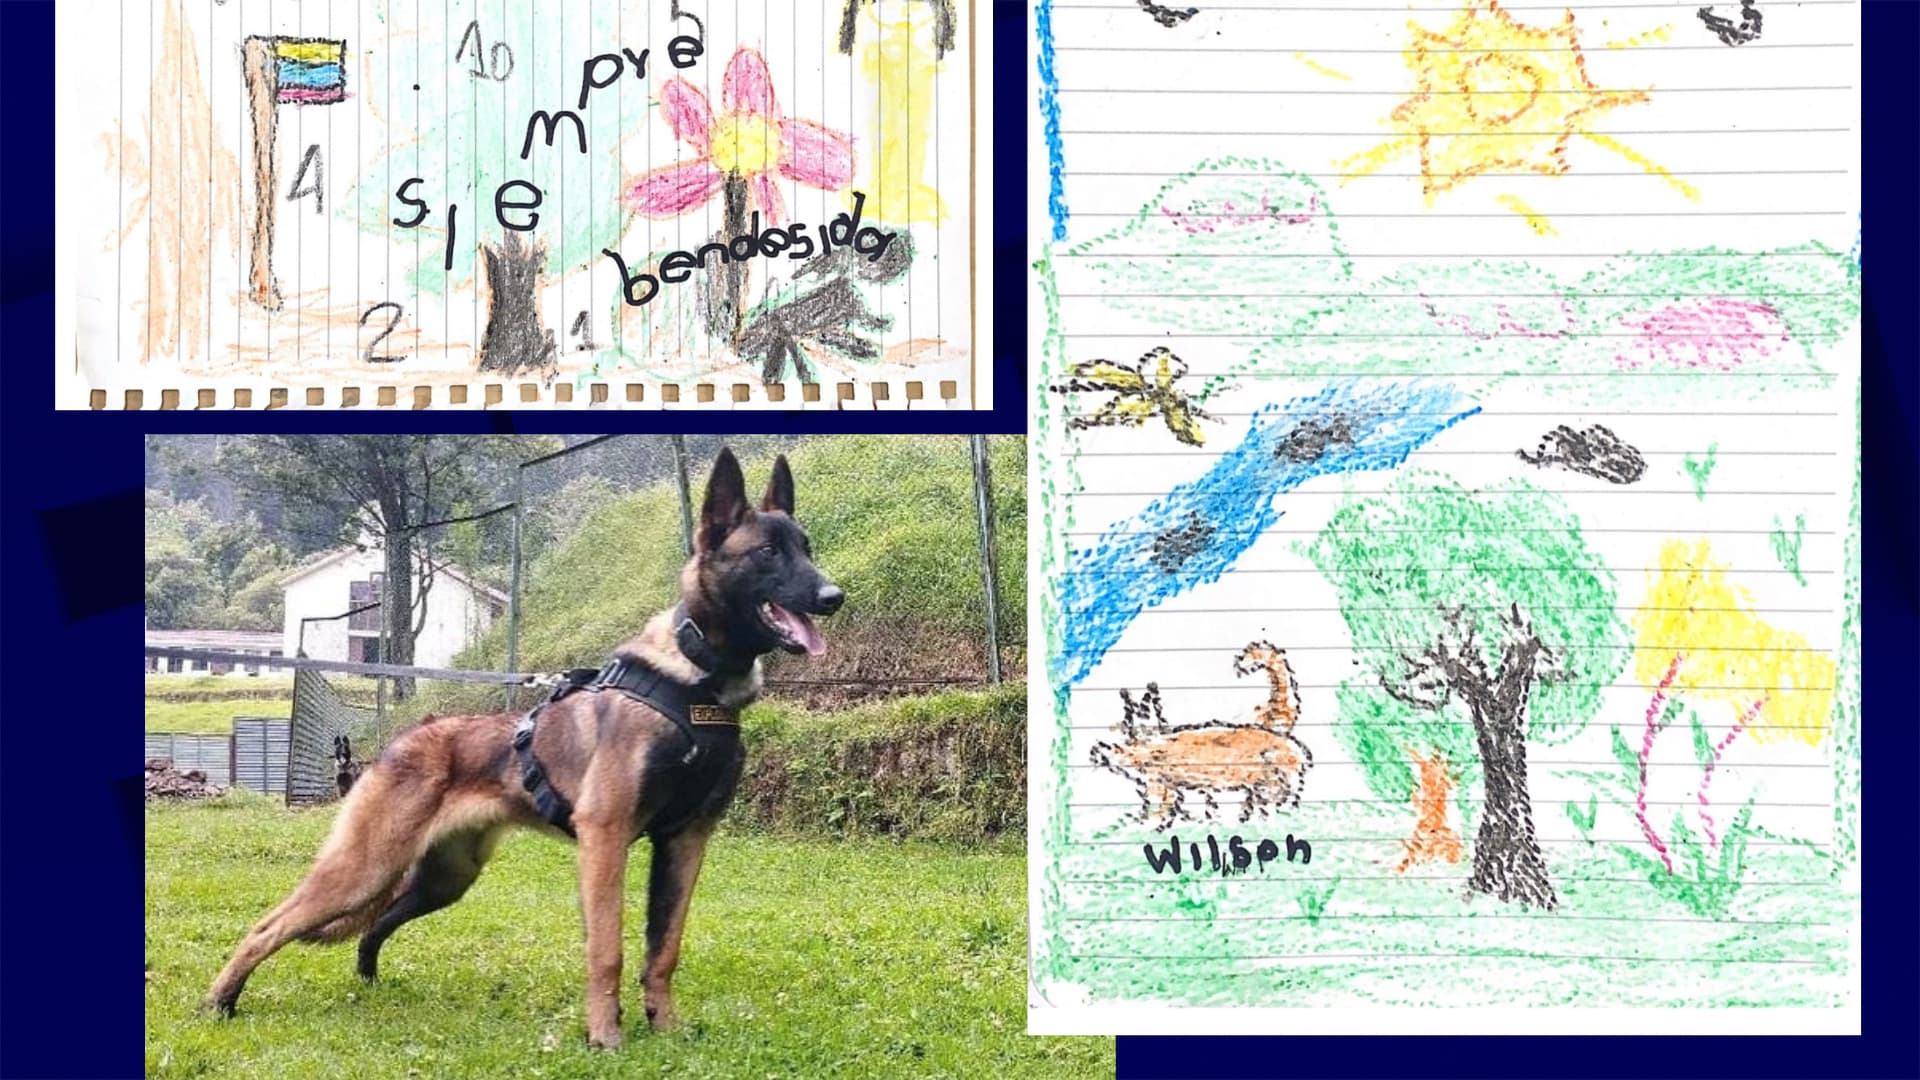 De eerste tekenfilms van kinderen die in het bos werden gered, beeldden Wilson af, een hond die tijdens een zoektocht was verdwaald